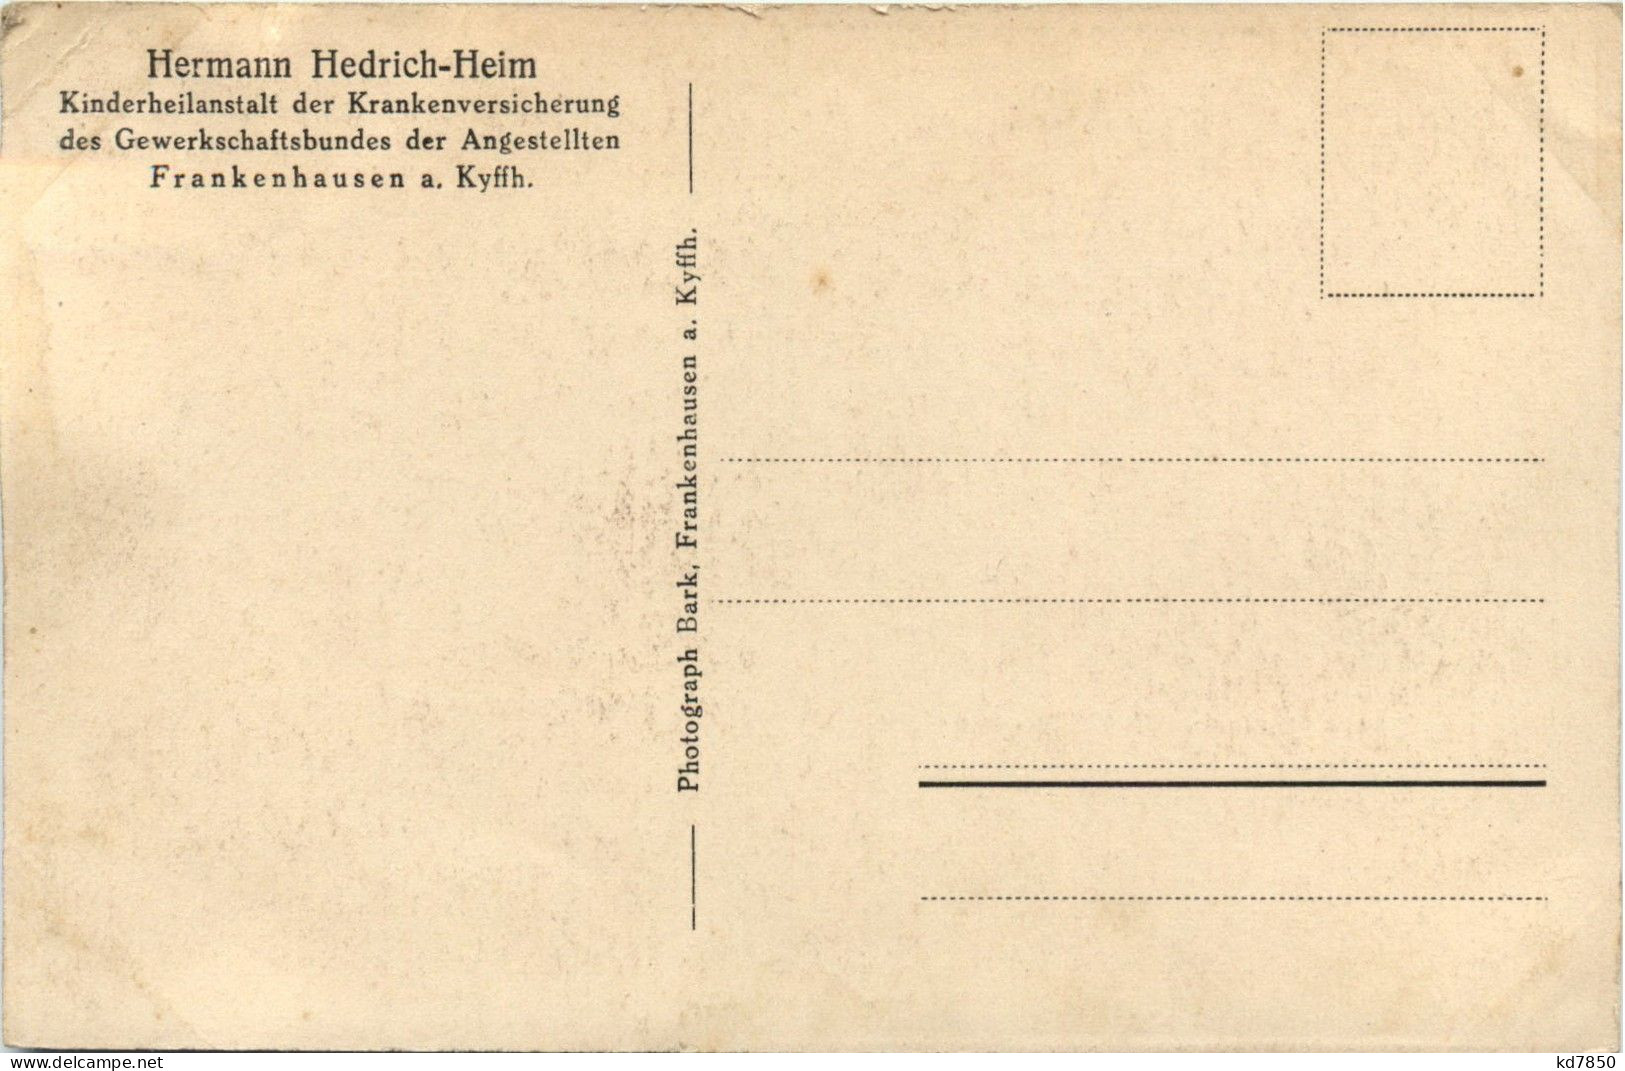 Solbad Frankenhausen - Heinrich Hedrich-Heim, Haupteingangmit Terrasseund Leuchtfontaine - Kyffhaeuser